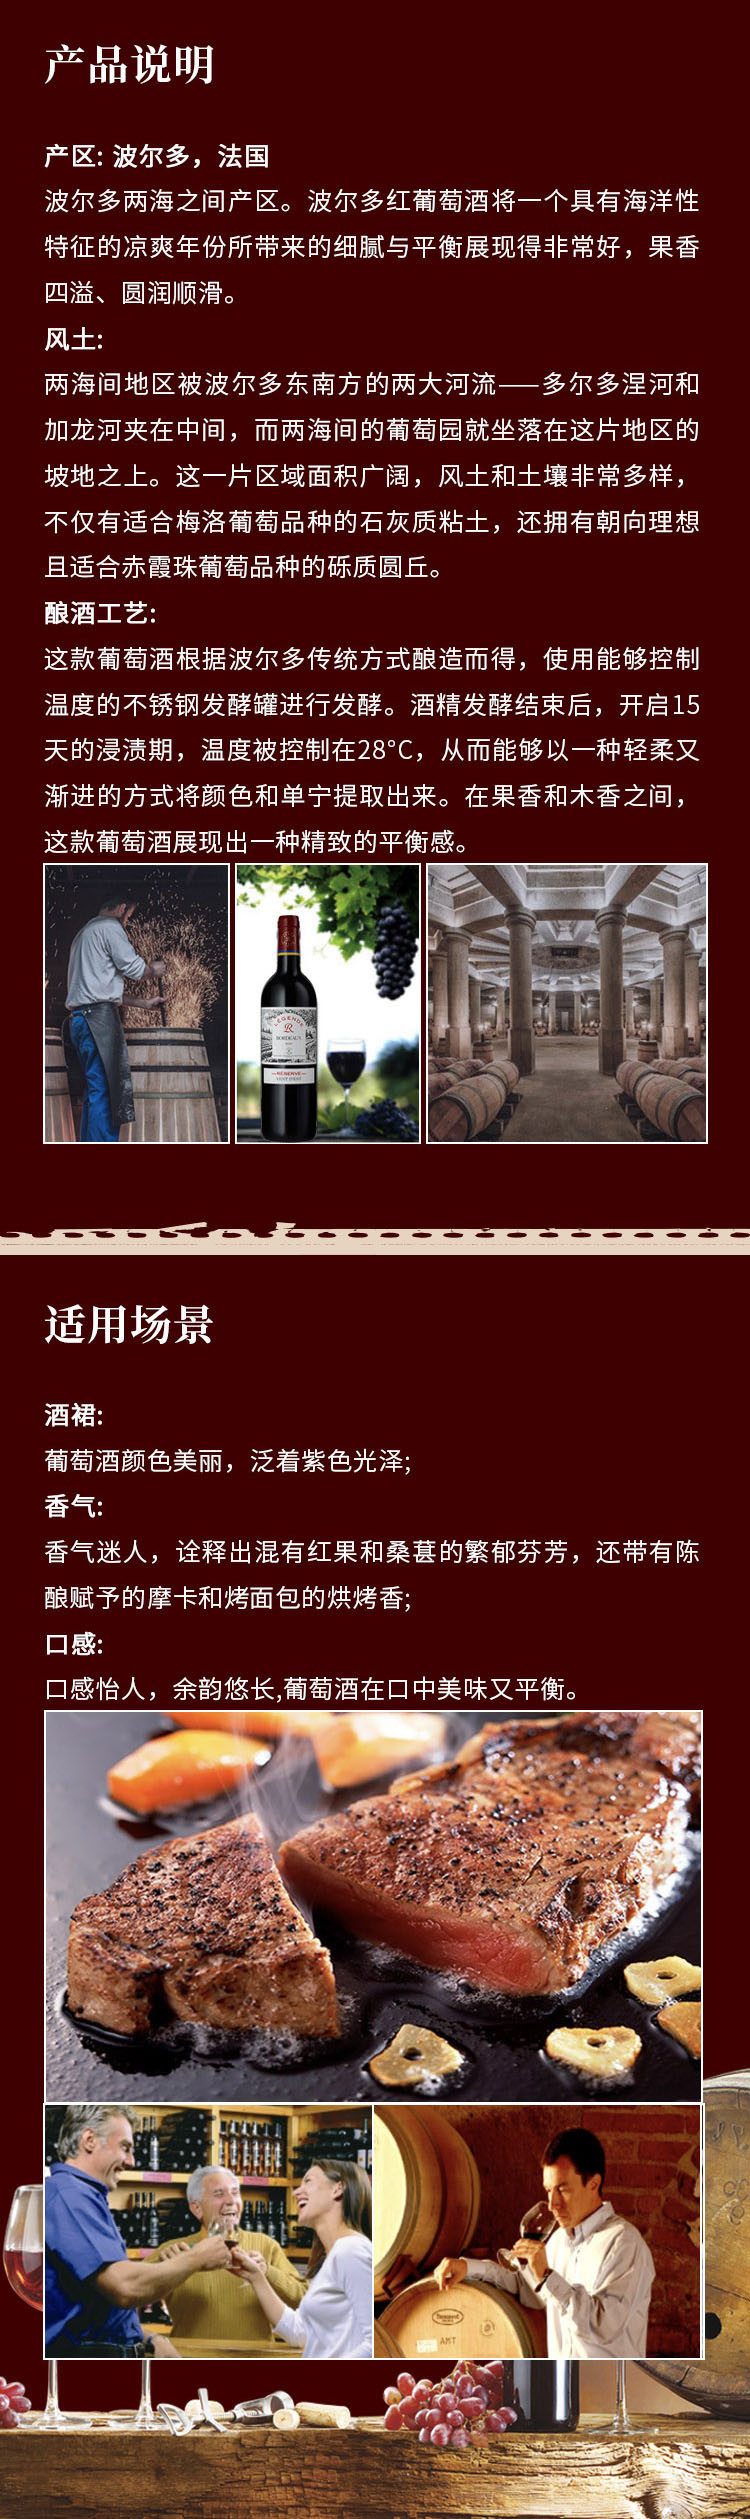 拉菲传奇 传奇源自拉菲罗斯柴尔德珍藏春风红葡萄酒 750